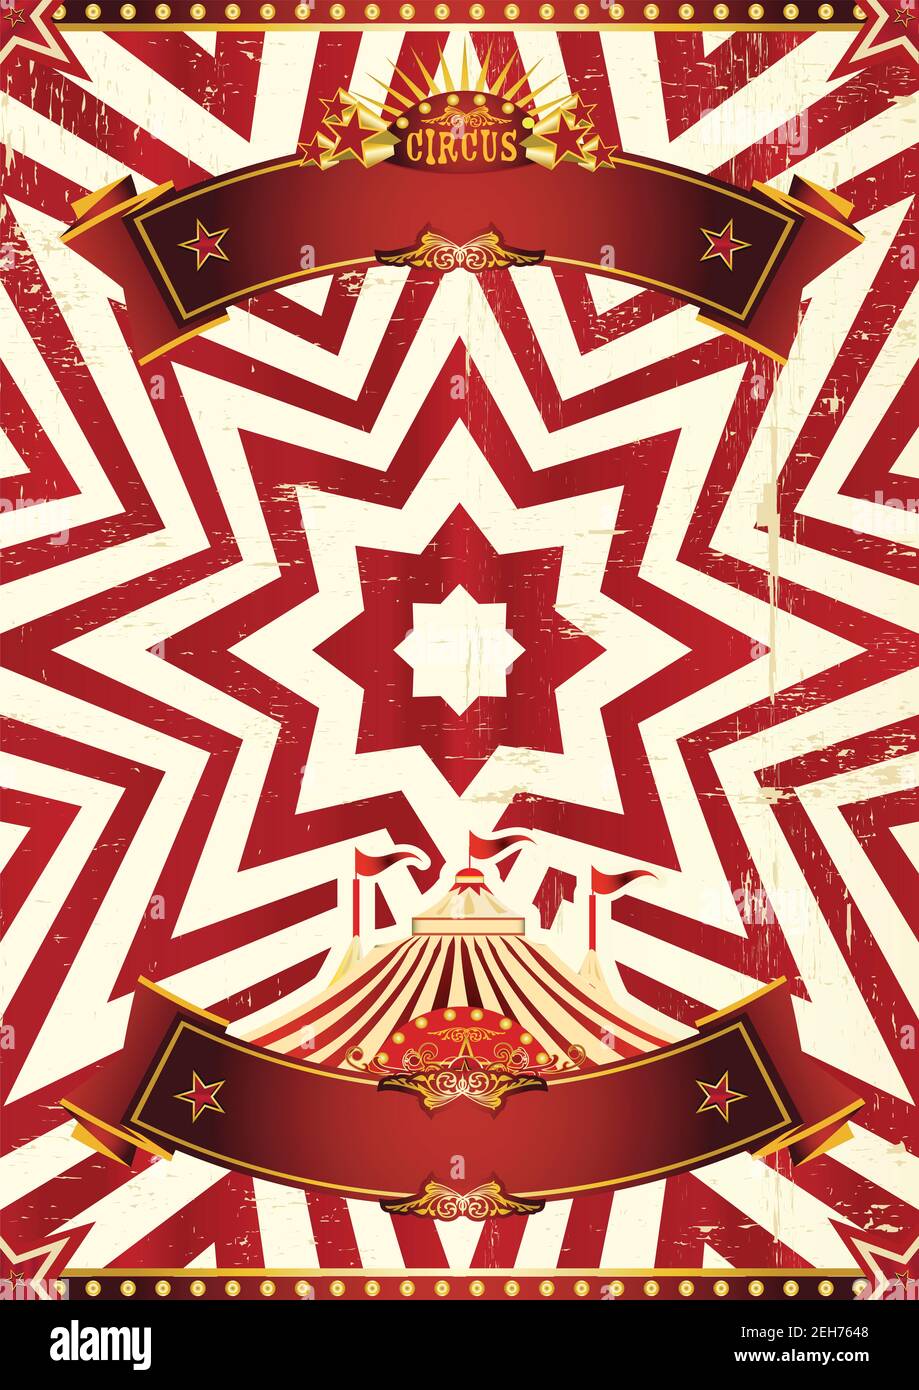 vintage carnival poster background